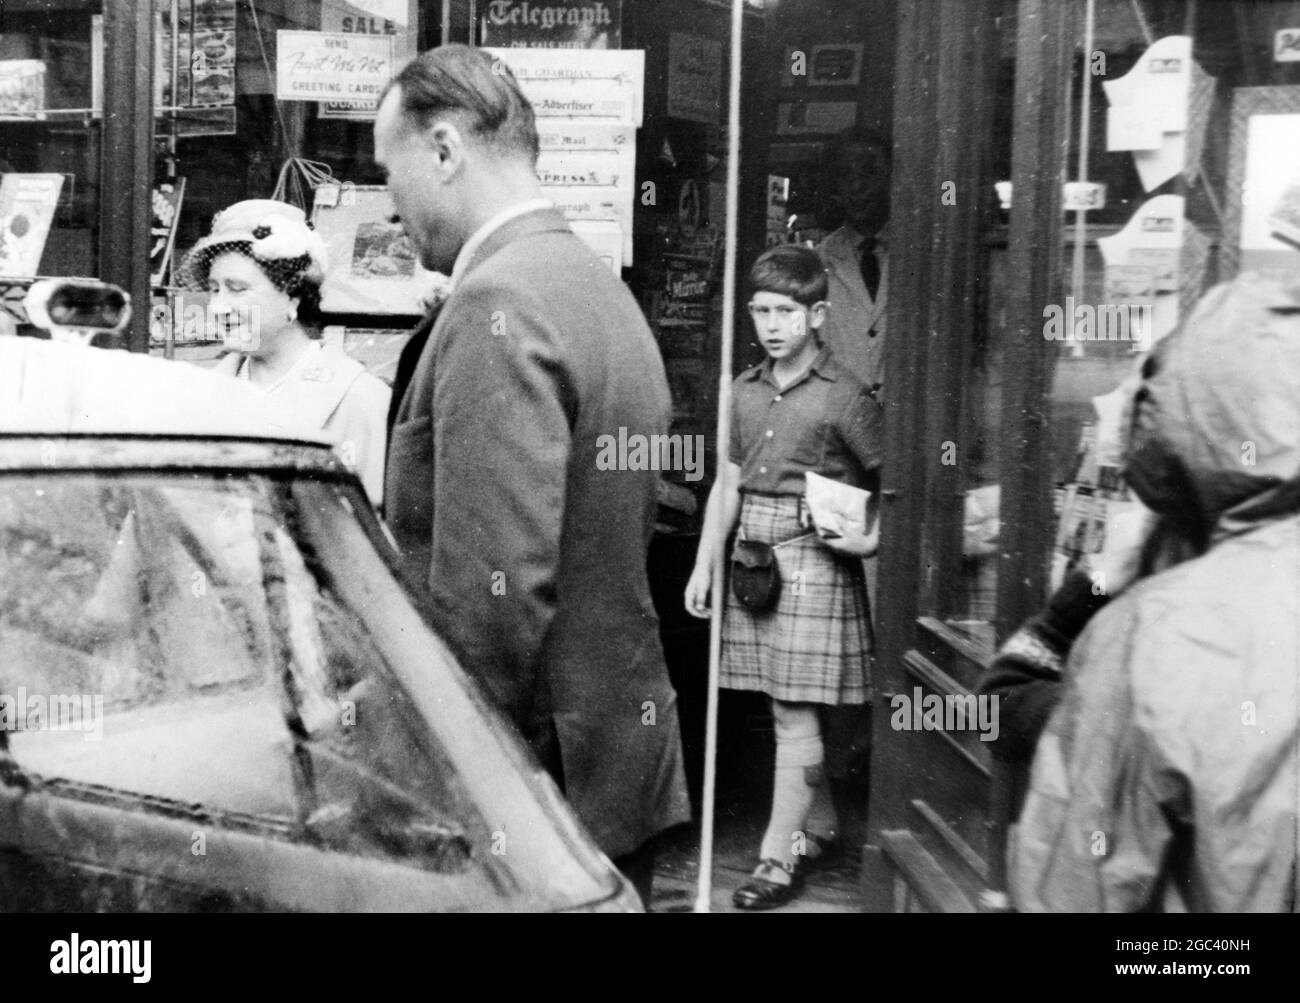 Ballater, Schottland - Prinz Charles, der einen Kilt trägt, verlässt während einer Shopping-Expedition mit der Queen Mother einen Angelgeschäft. 13. September 1959 Stockfoto